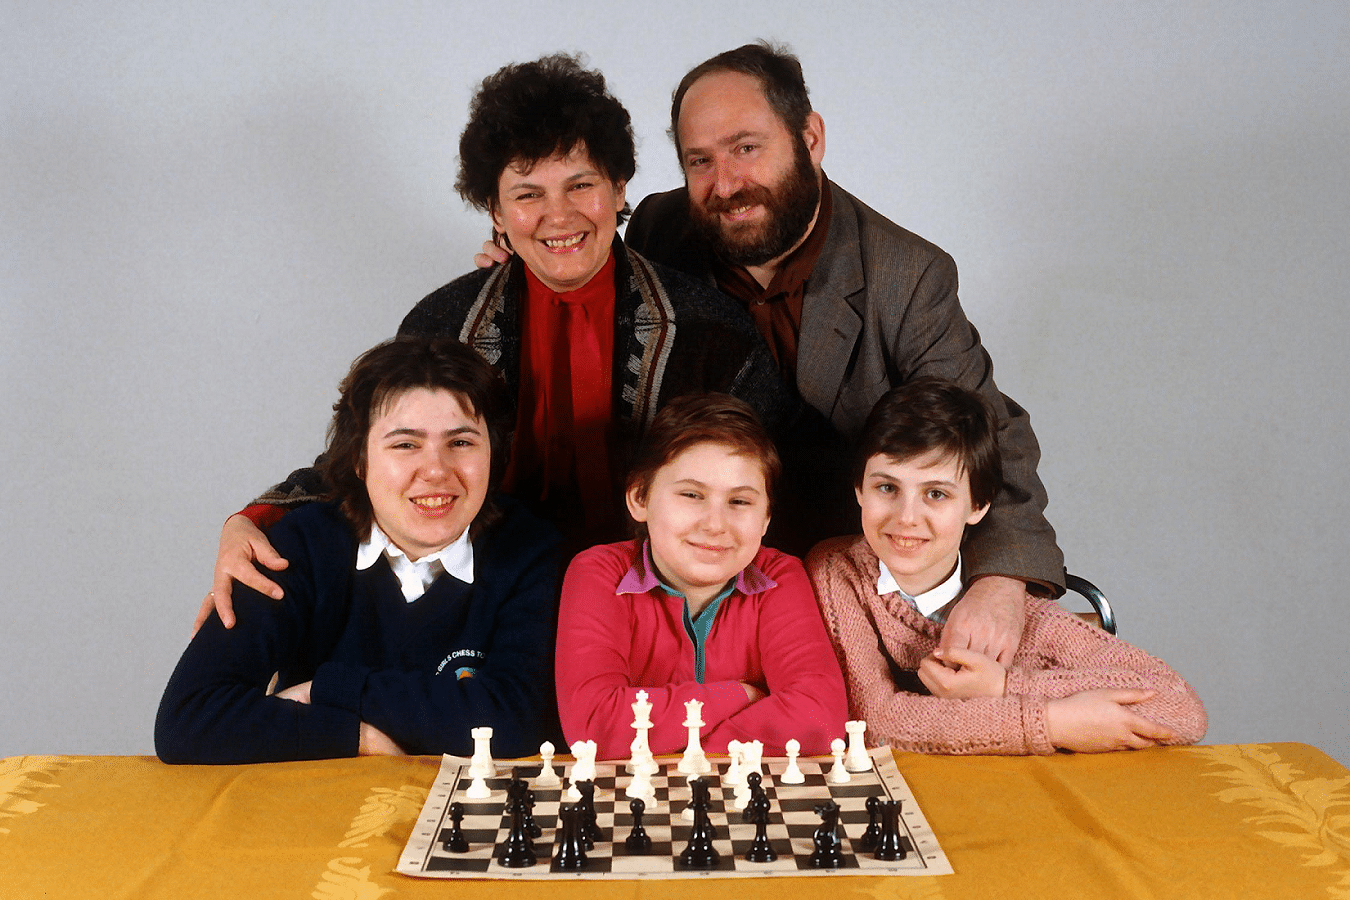 A família Polgar: genialidade em três irmãs